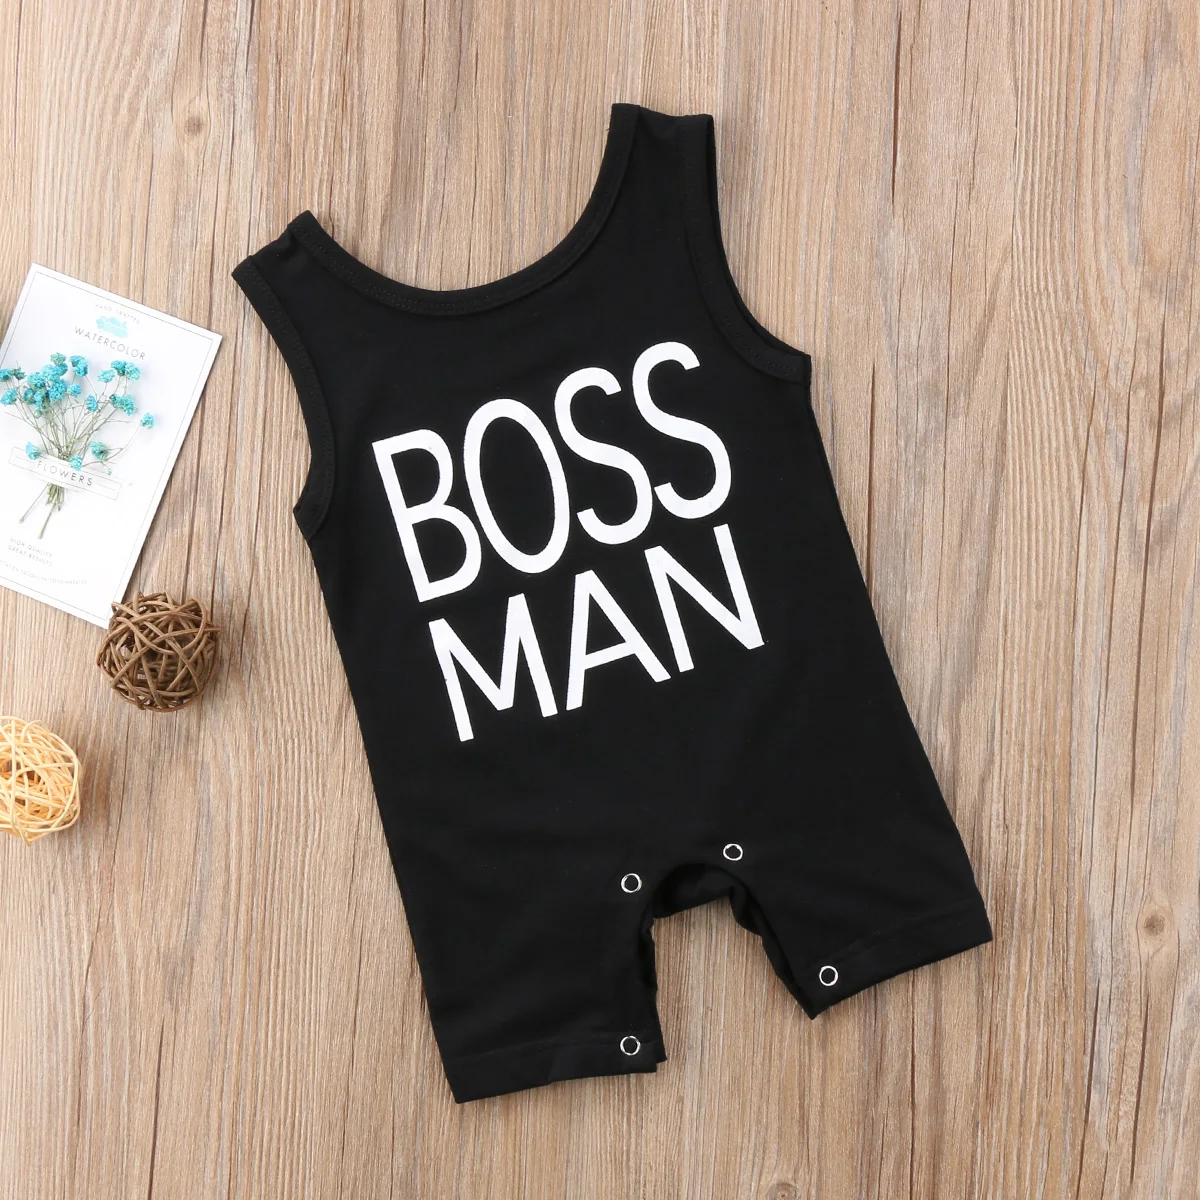 Хлопковый комбинезон для новорожденных мальчиков с надписью «Boss MAN»; длинный комбинезон; одежда